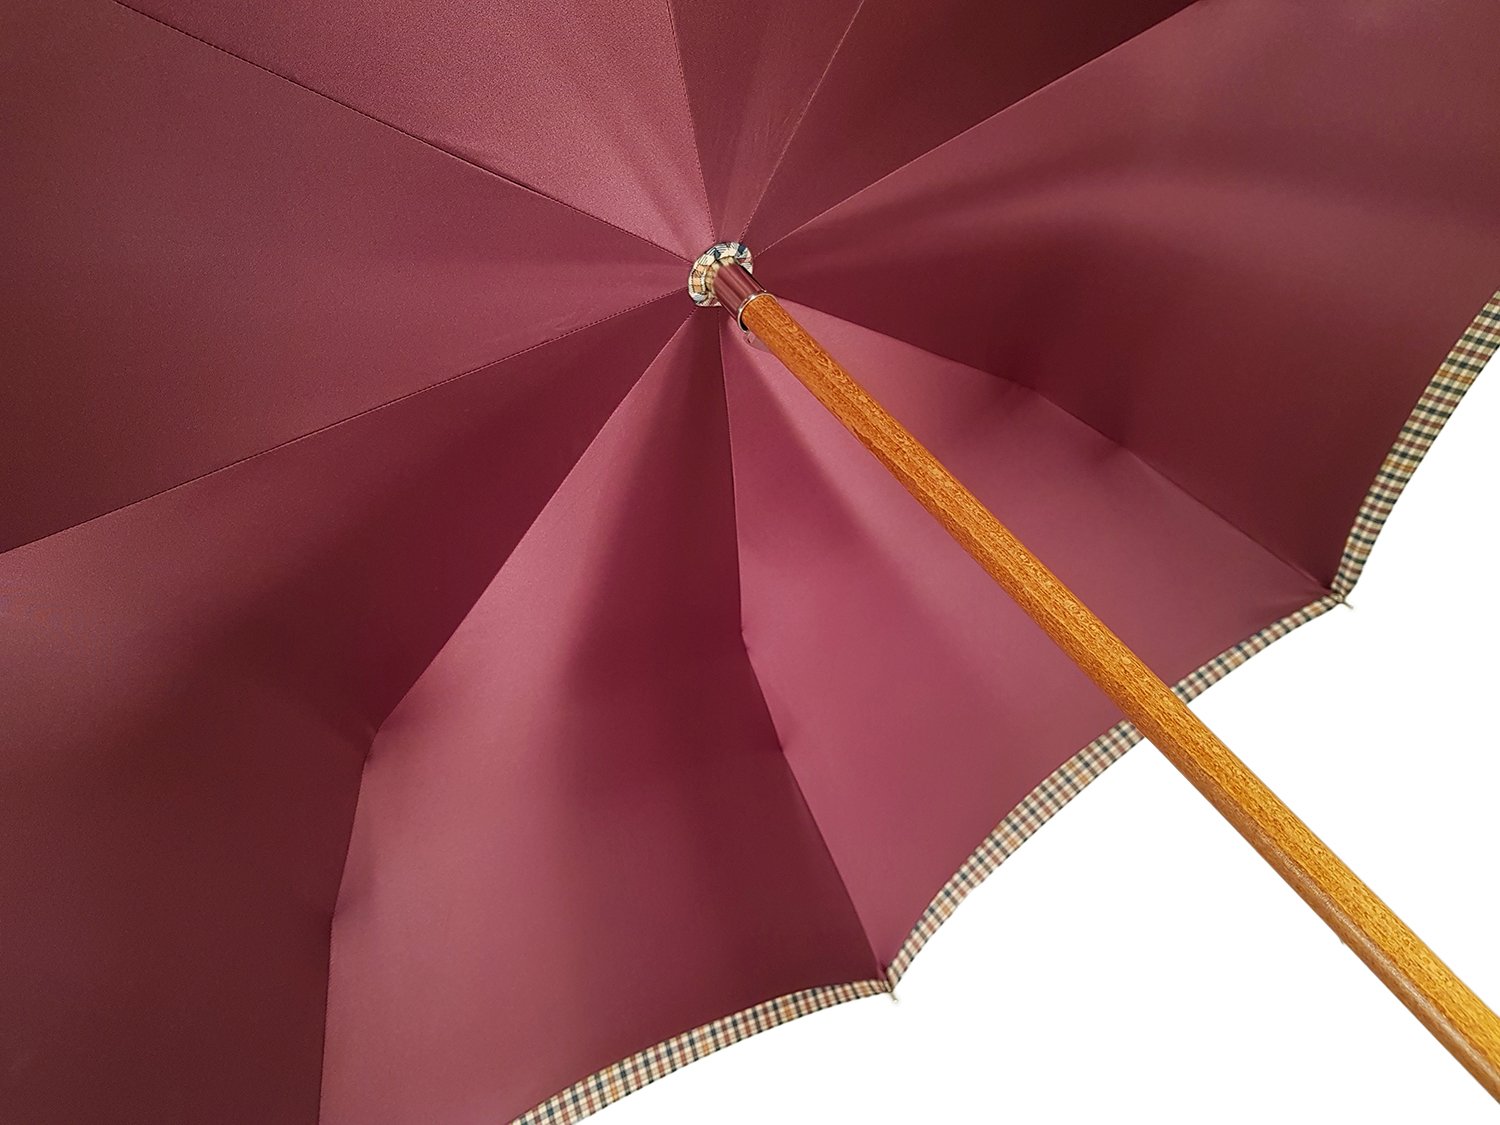 Double Cloth Men's Umbrella - Cotton Fabric - il-marchesato